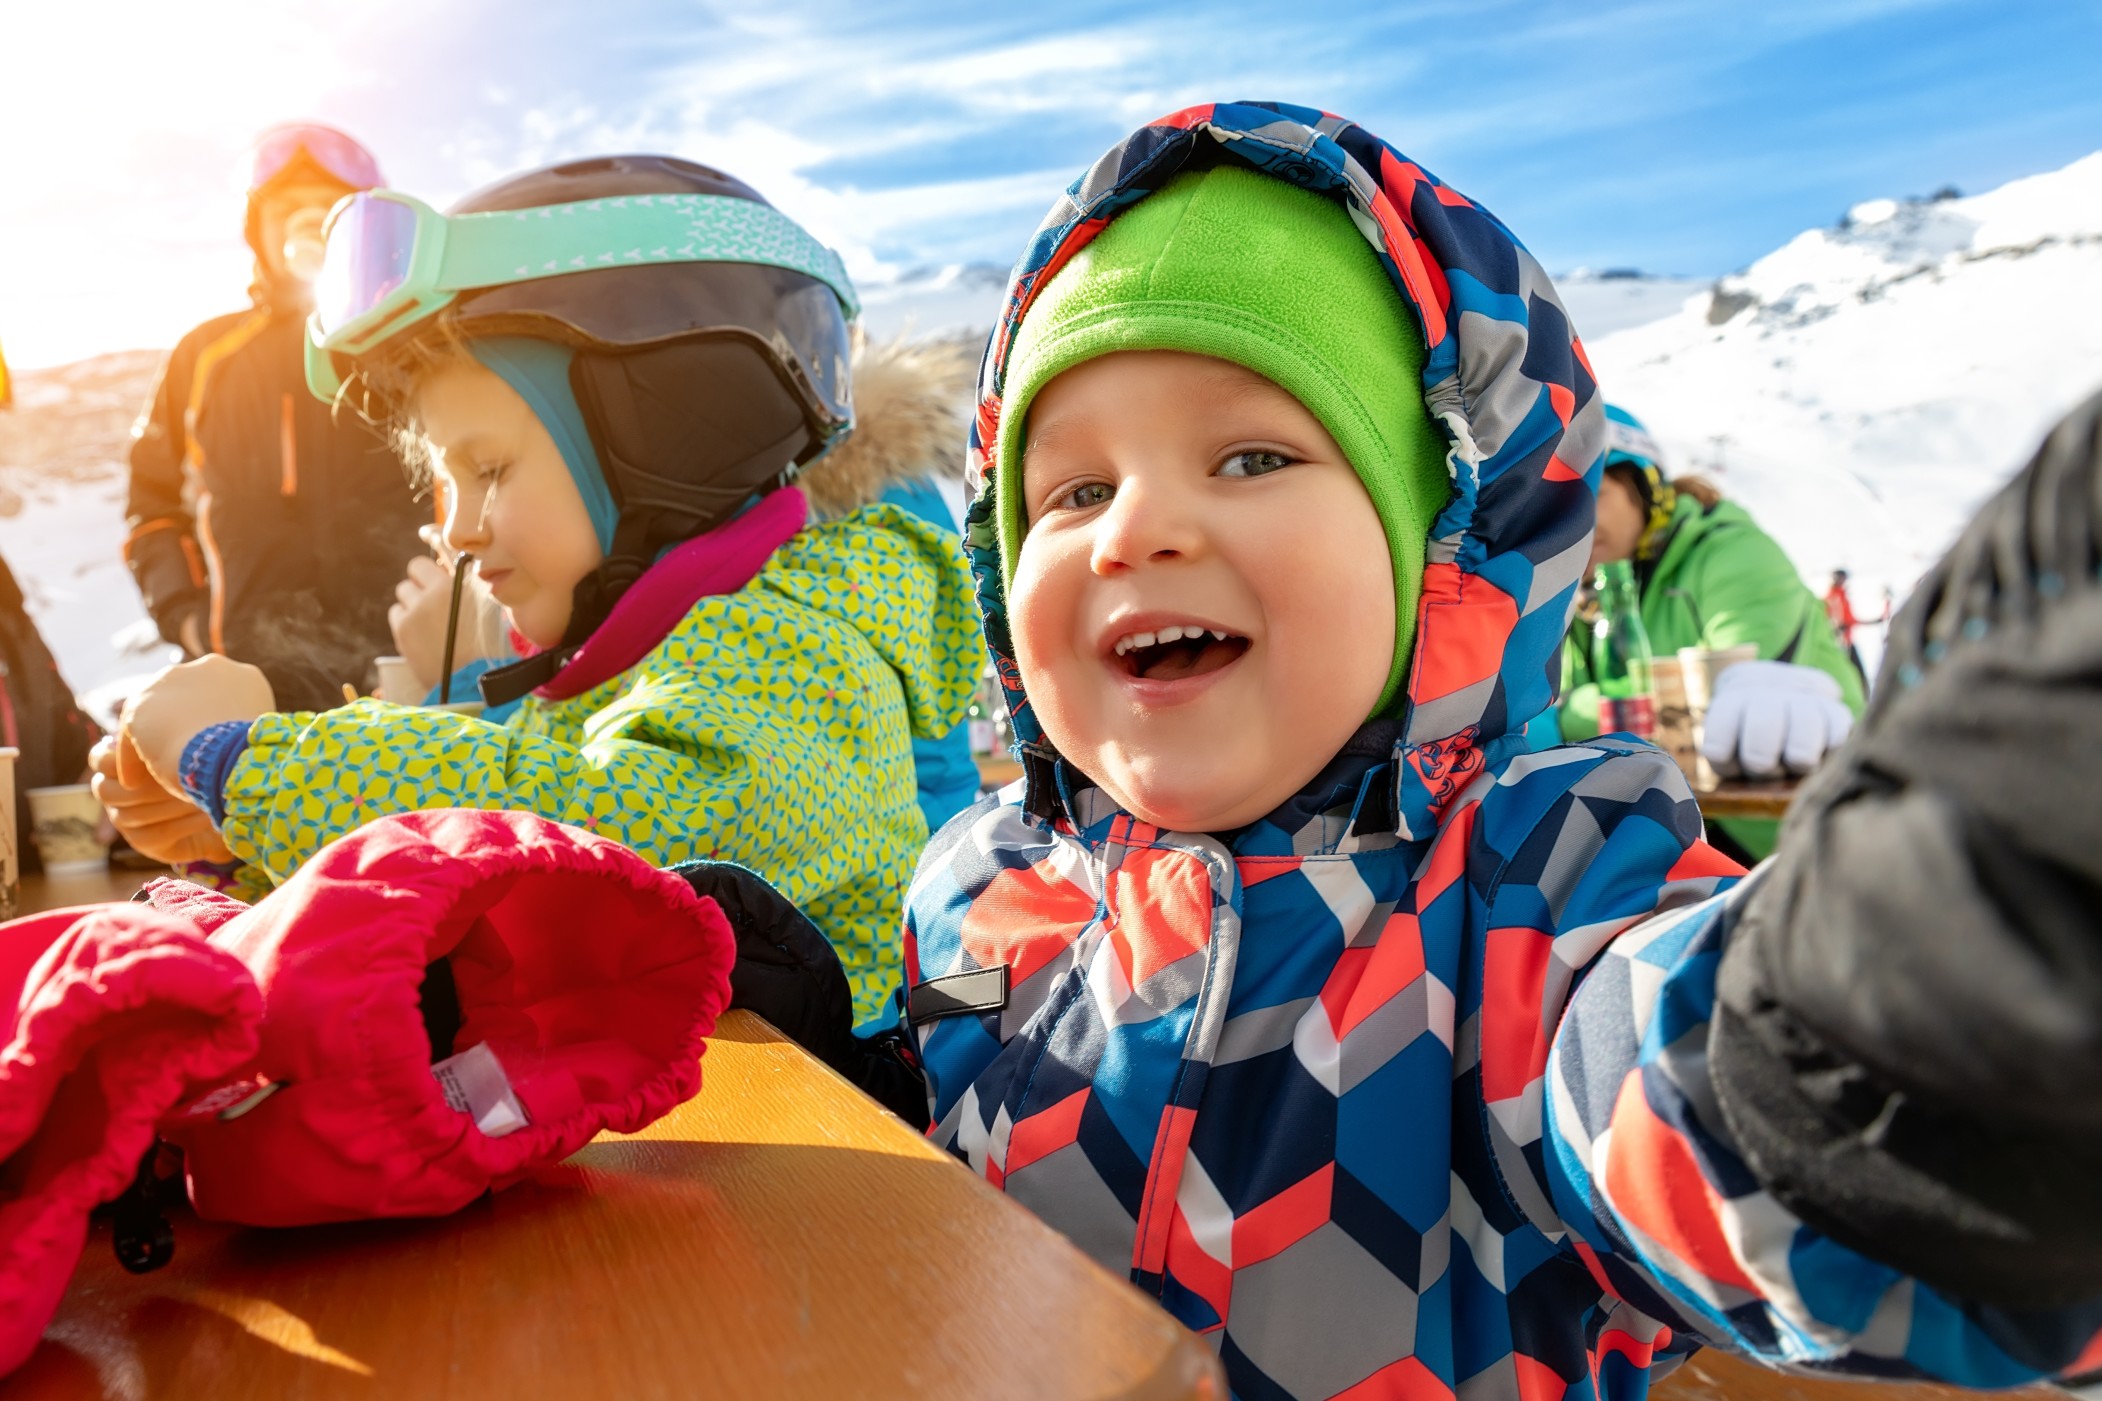 Skigenuss mit Kindern als Familie in Österreich! Bild:@gorlovkv via Twenty20